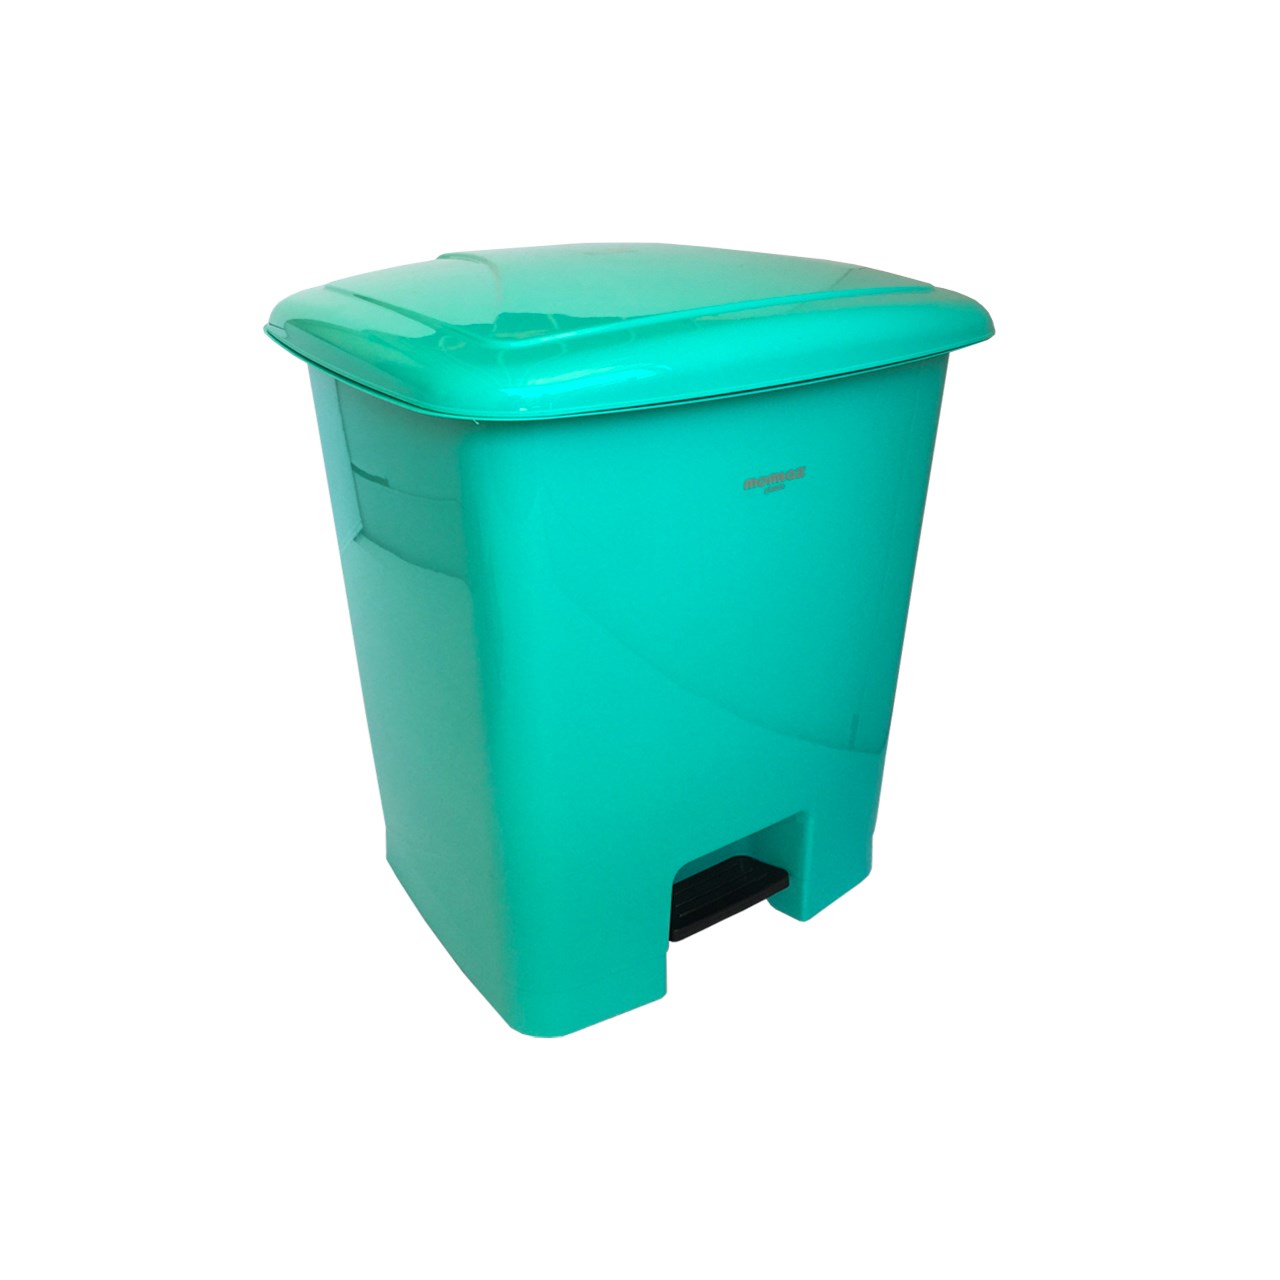 سطل زباله پدالی ممتاز پلاستیک مدل 750 ظرفیت ۵۲ لیتری